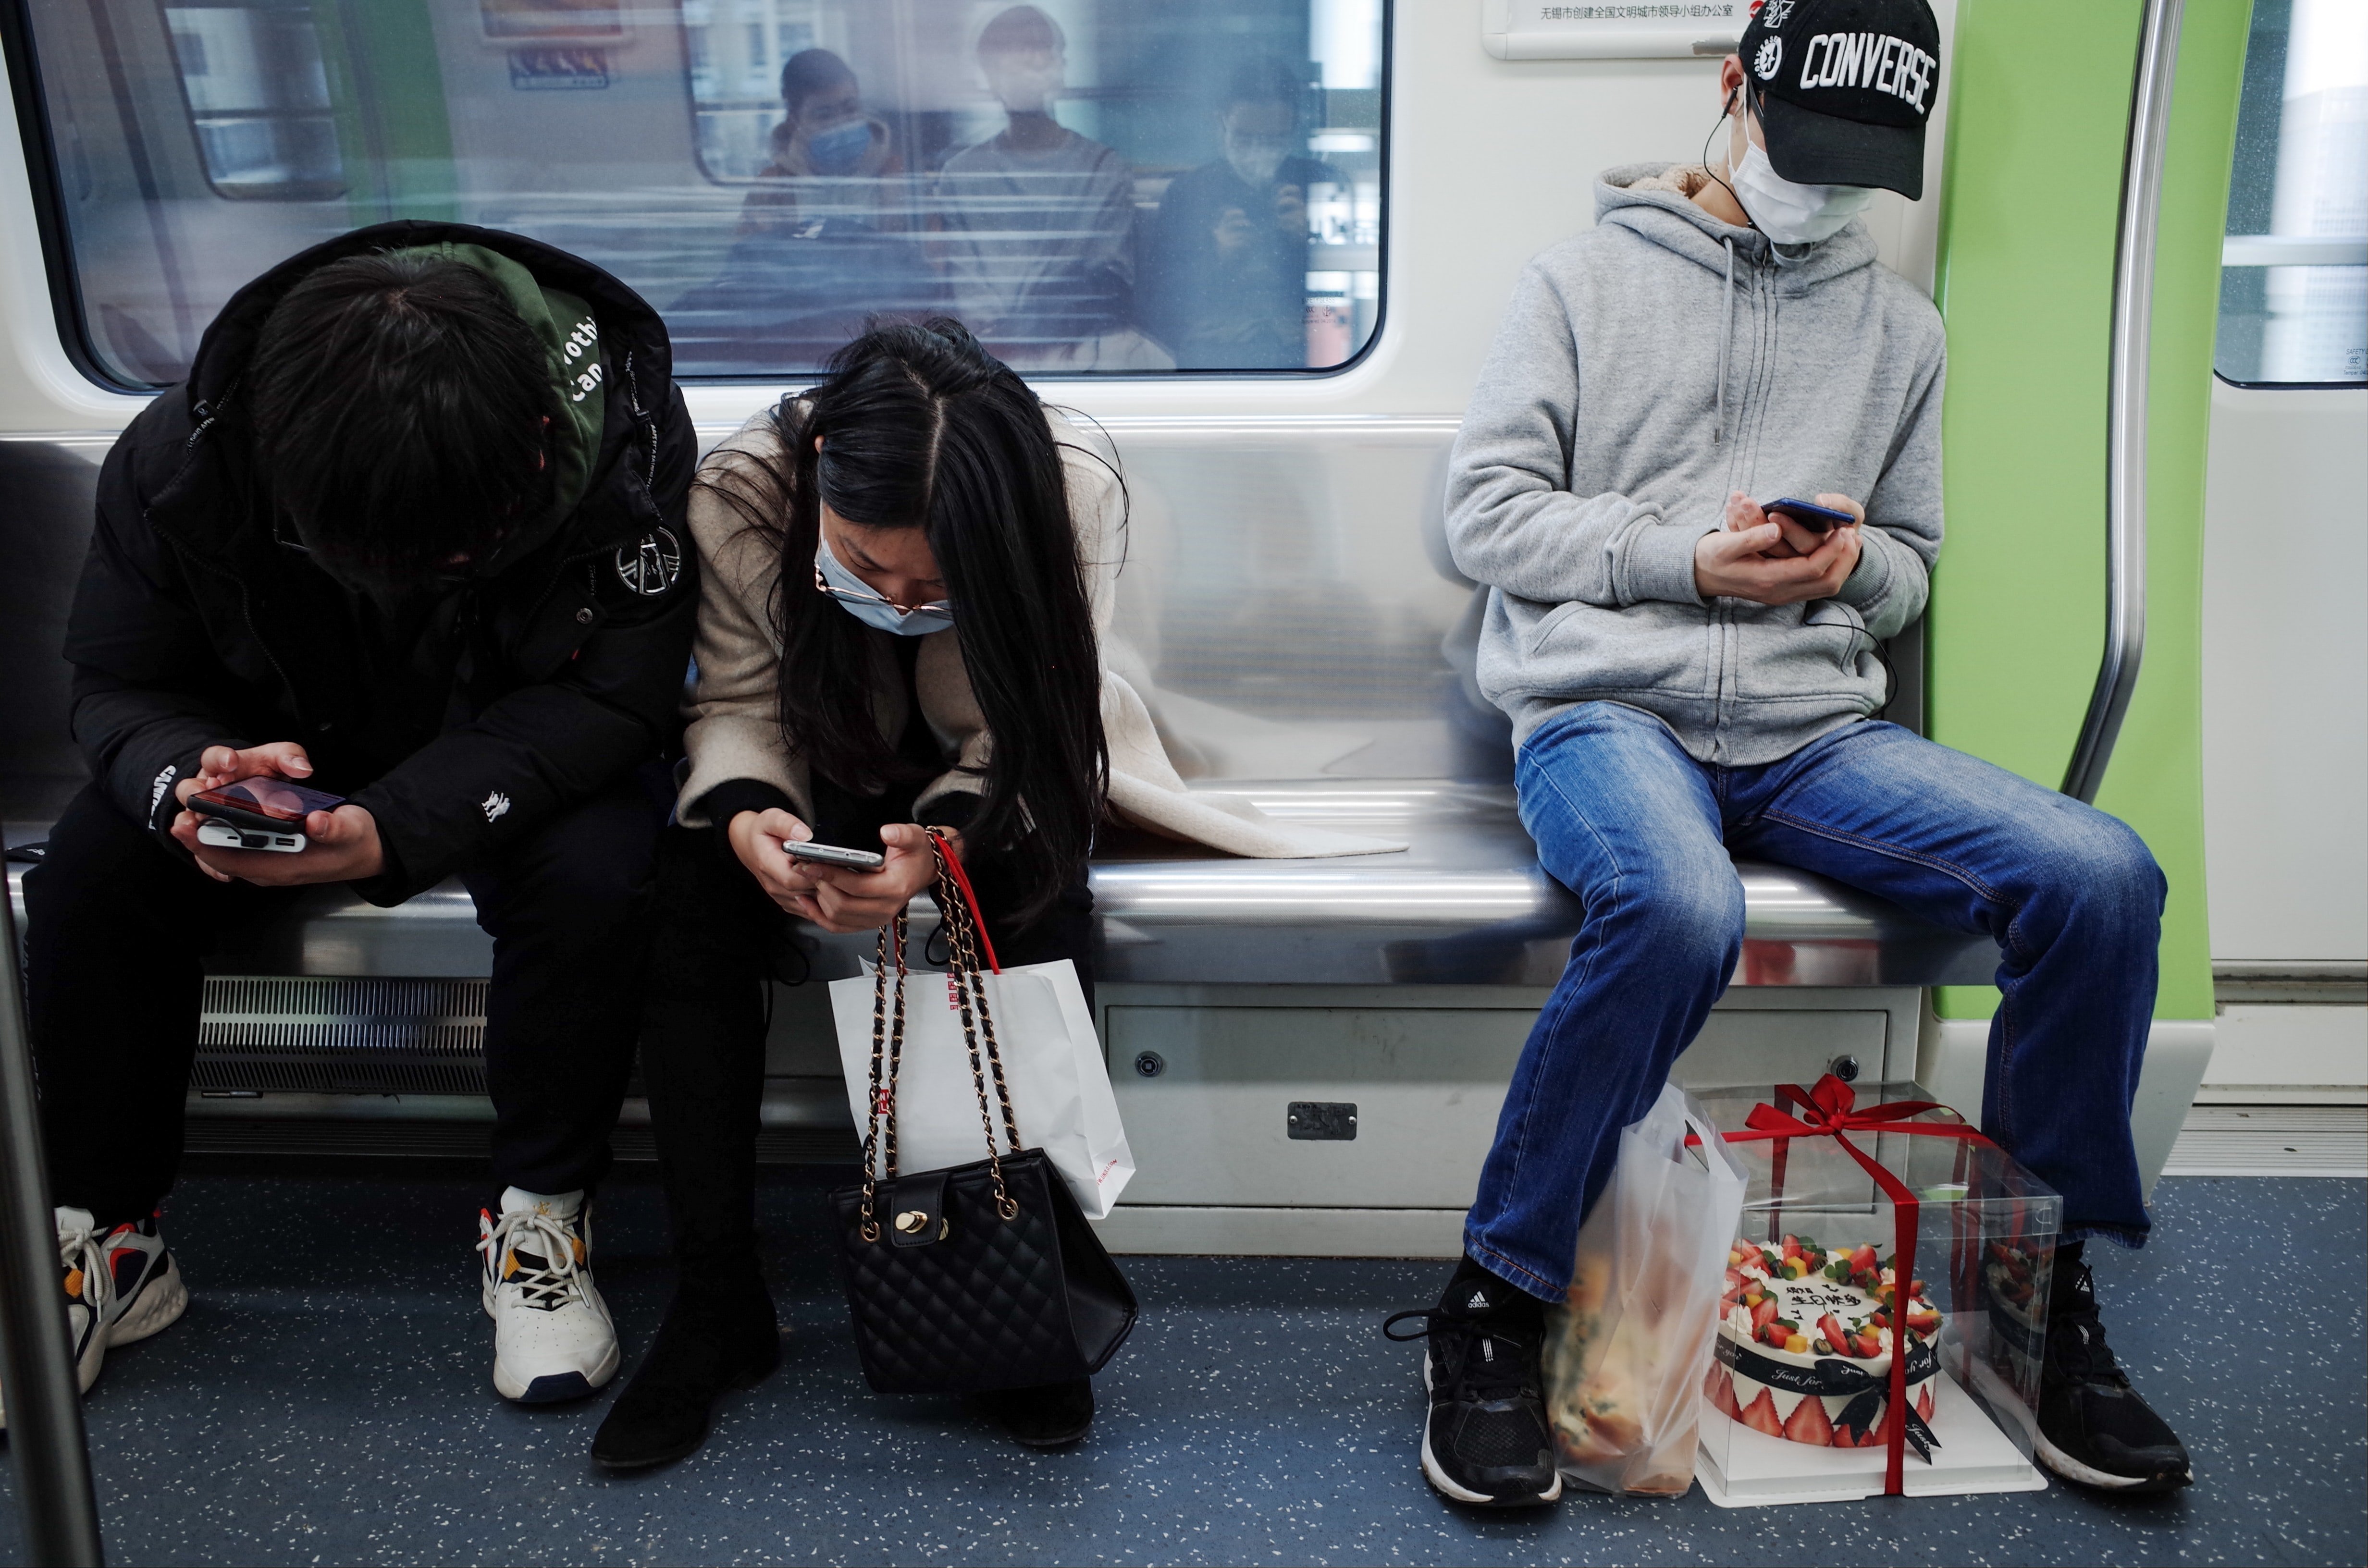 Gent amb màscares al metro|metre